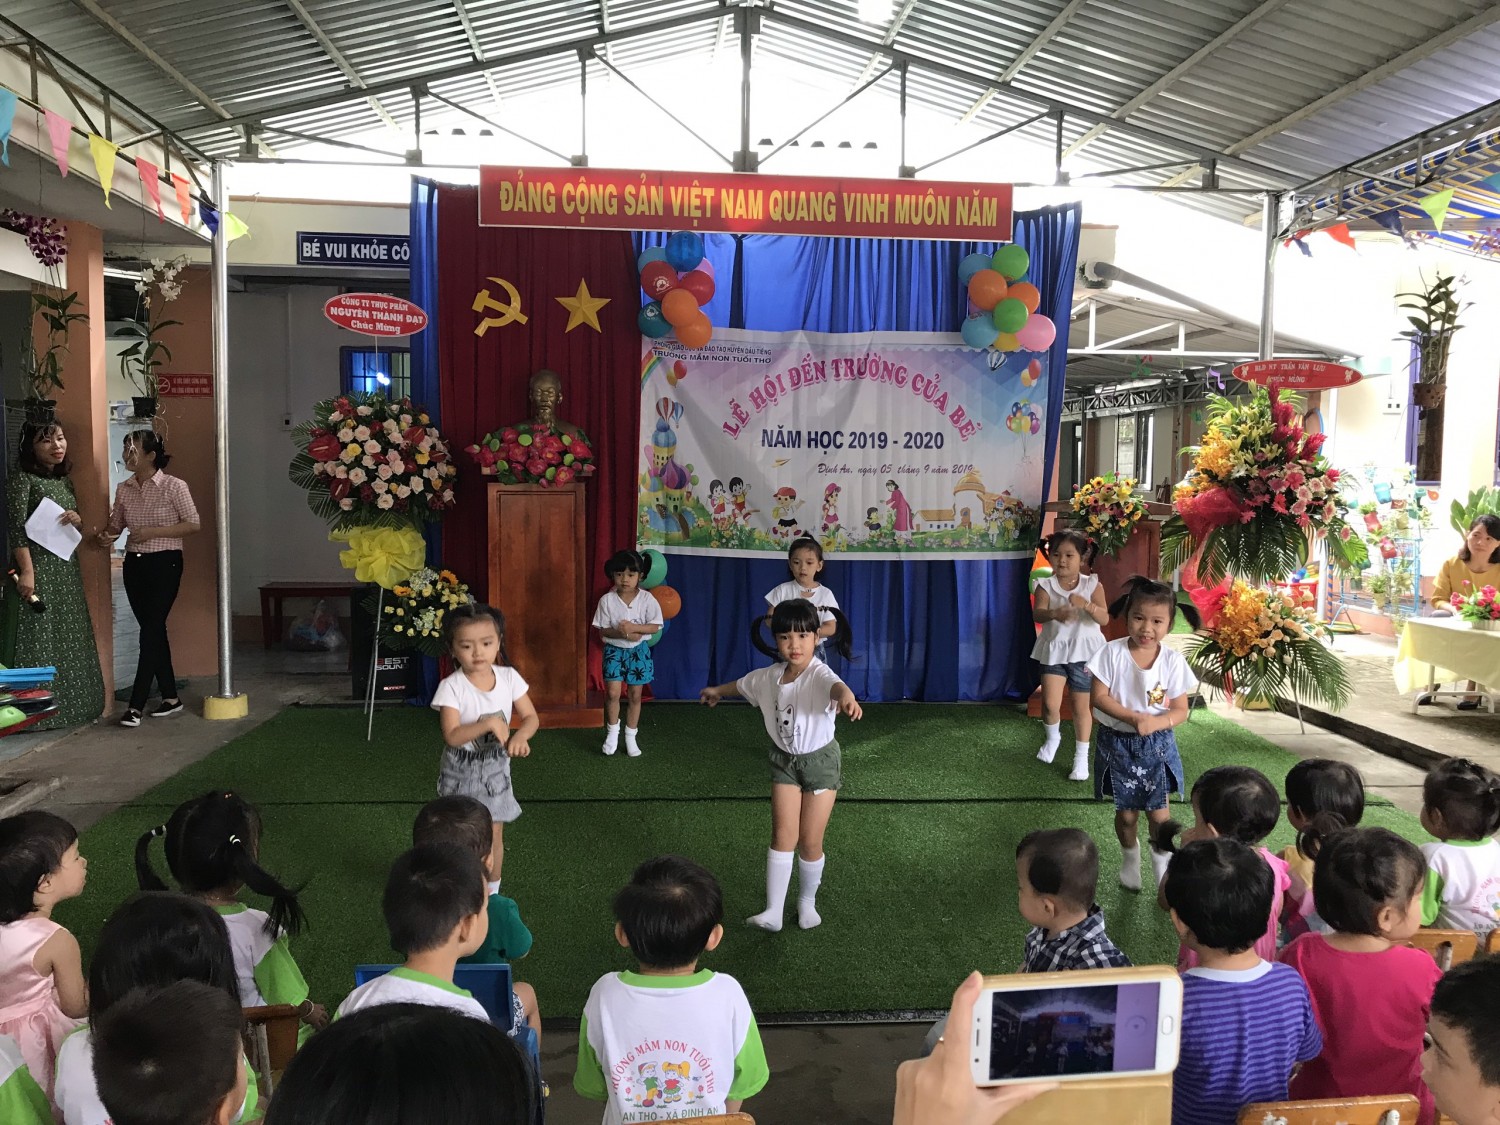 Ngày hội đến trường của các bé năm học 2019-2020